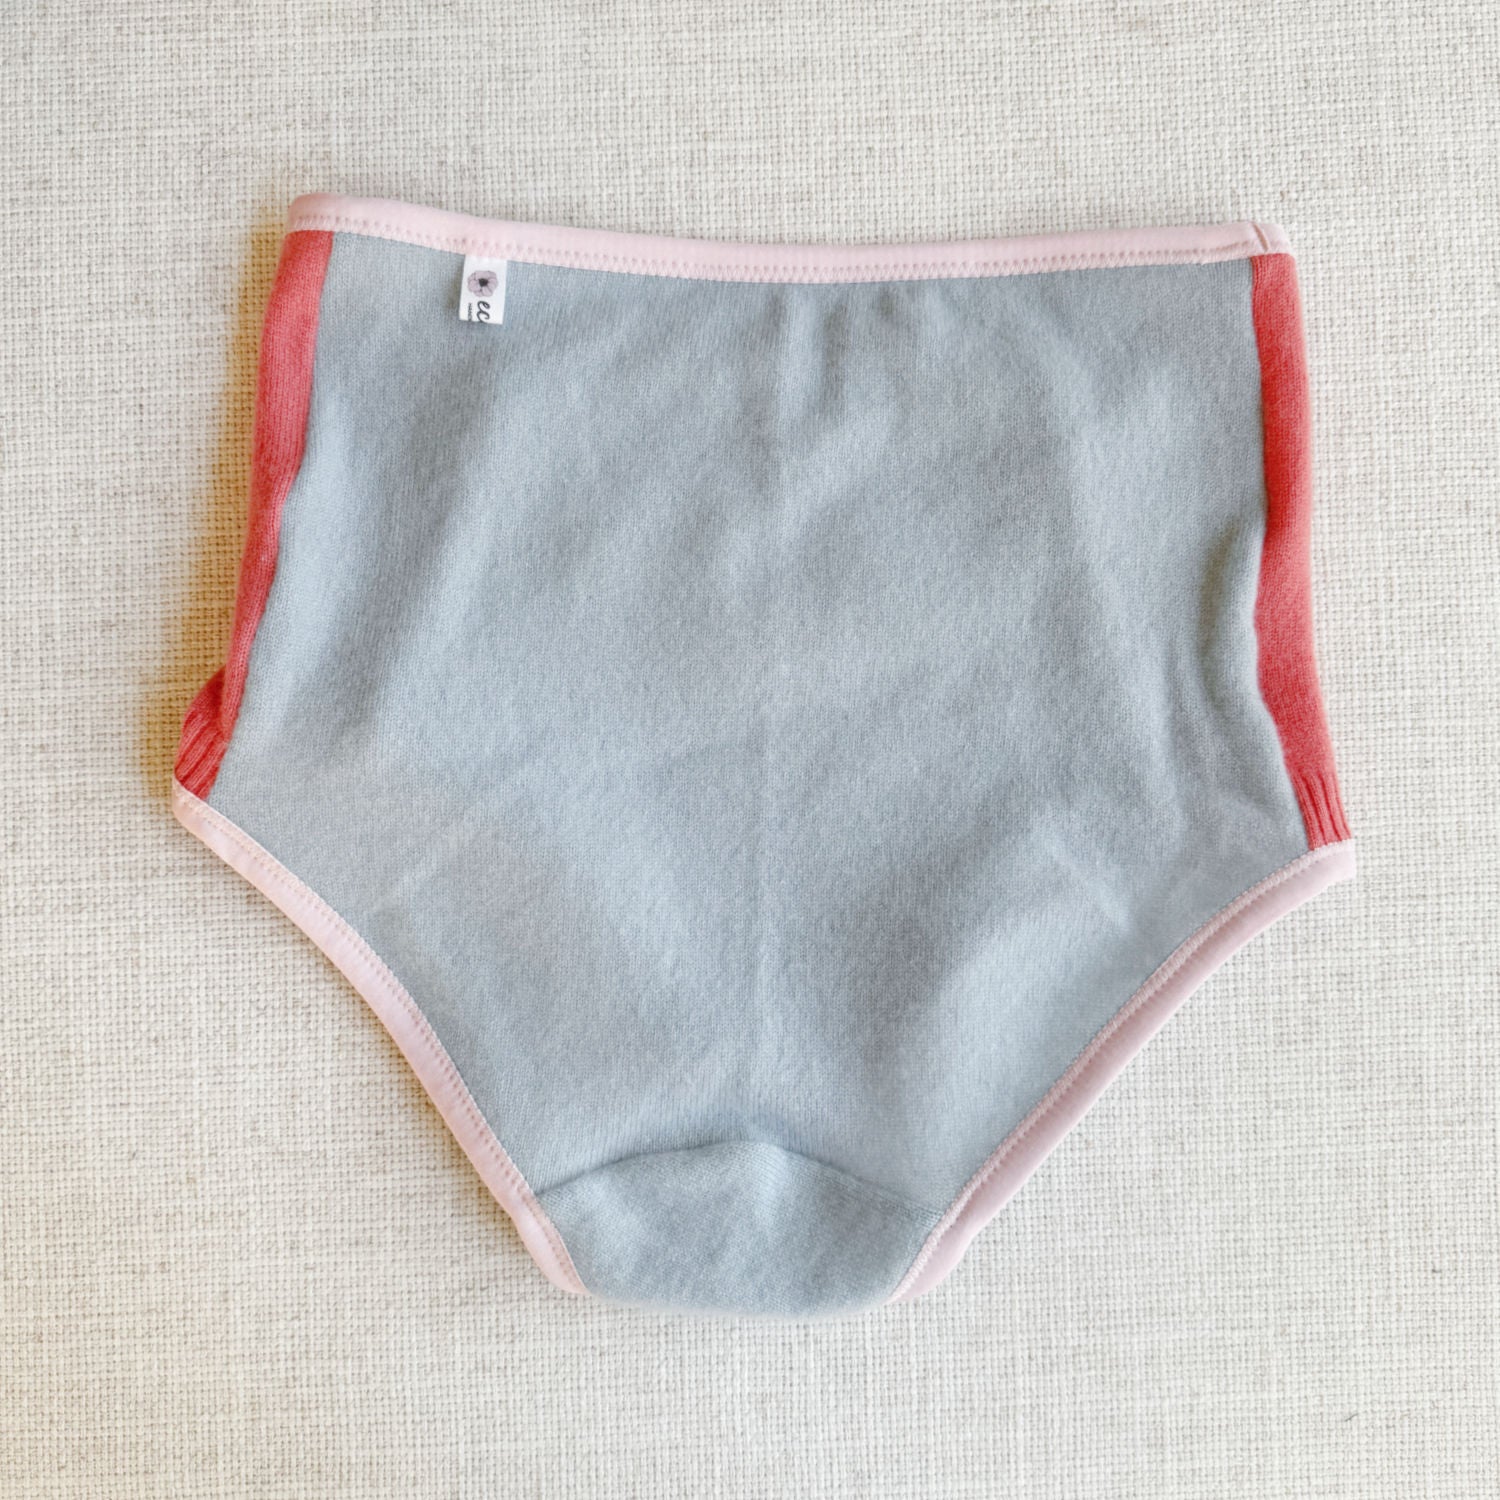 shop best cashmere french brief, cashmere underwear for women